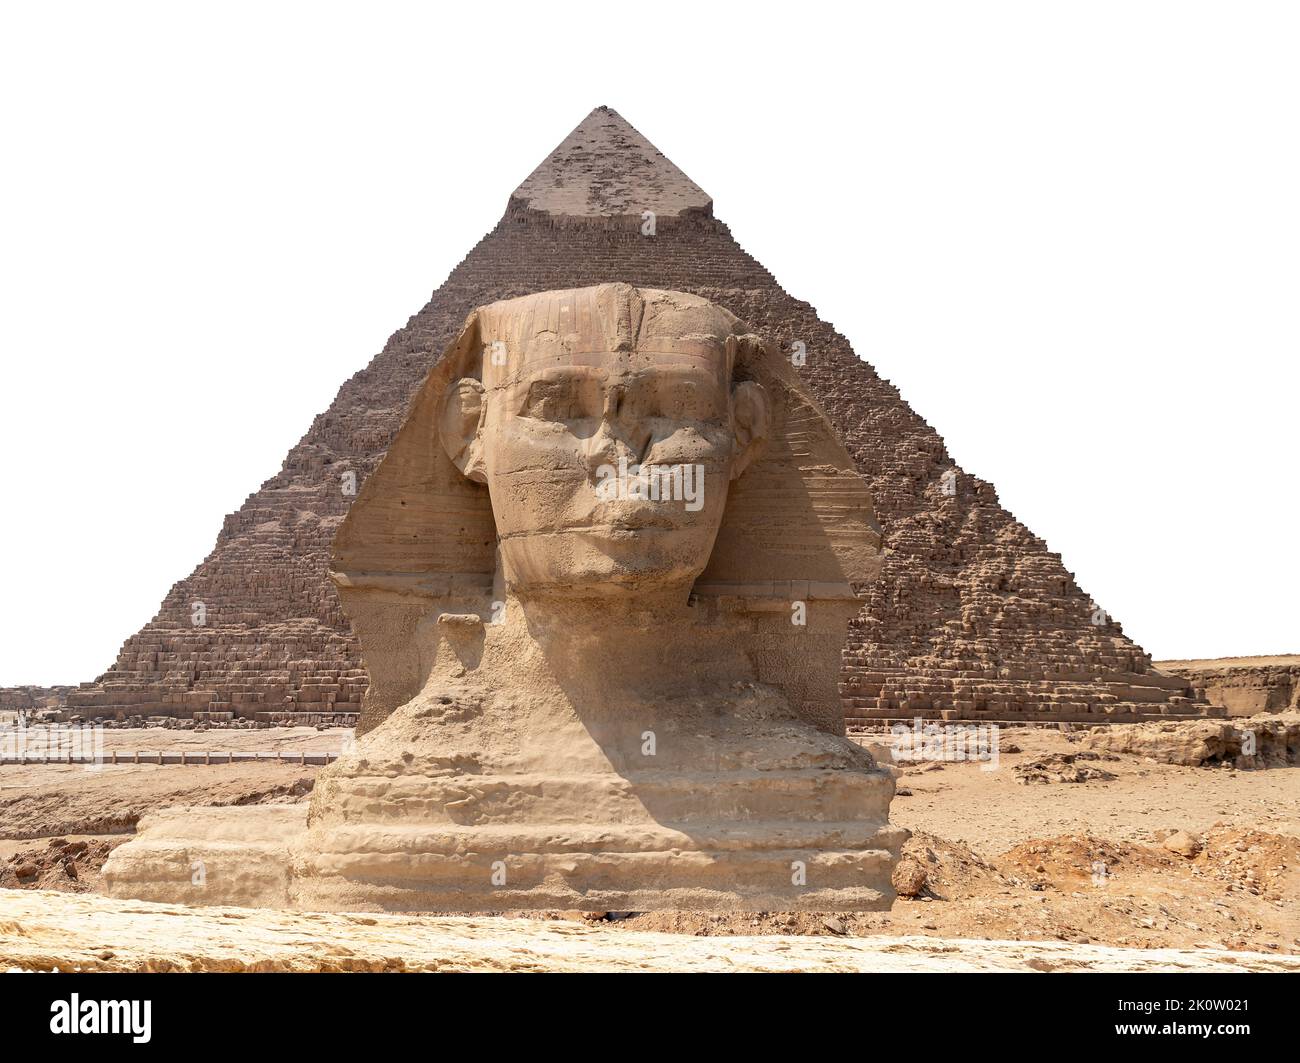 Spinx cara en el fondo de la pirámide de Giza, en El Cairo, Egipto Foto de stock